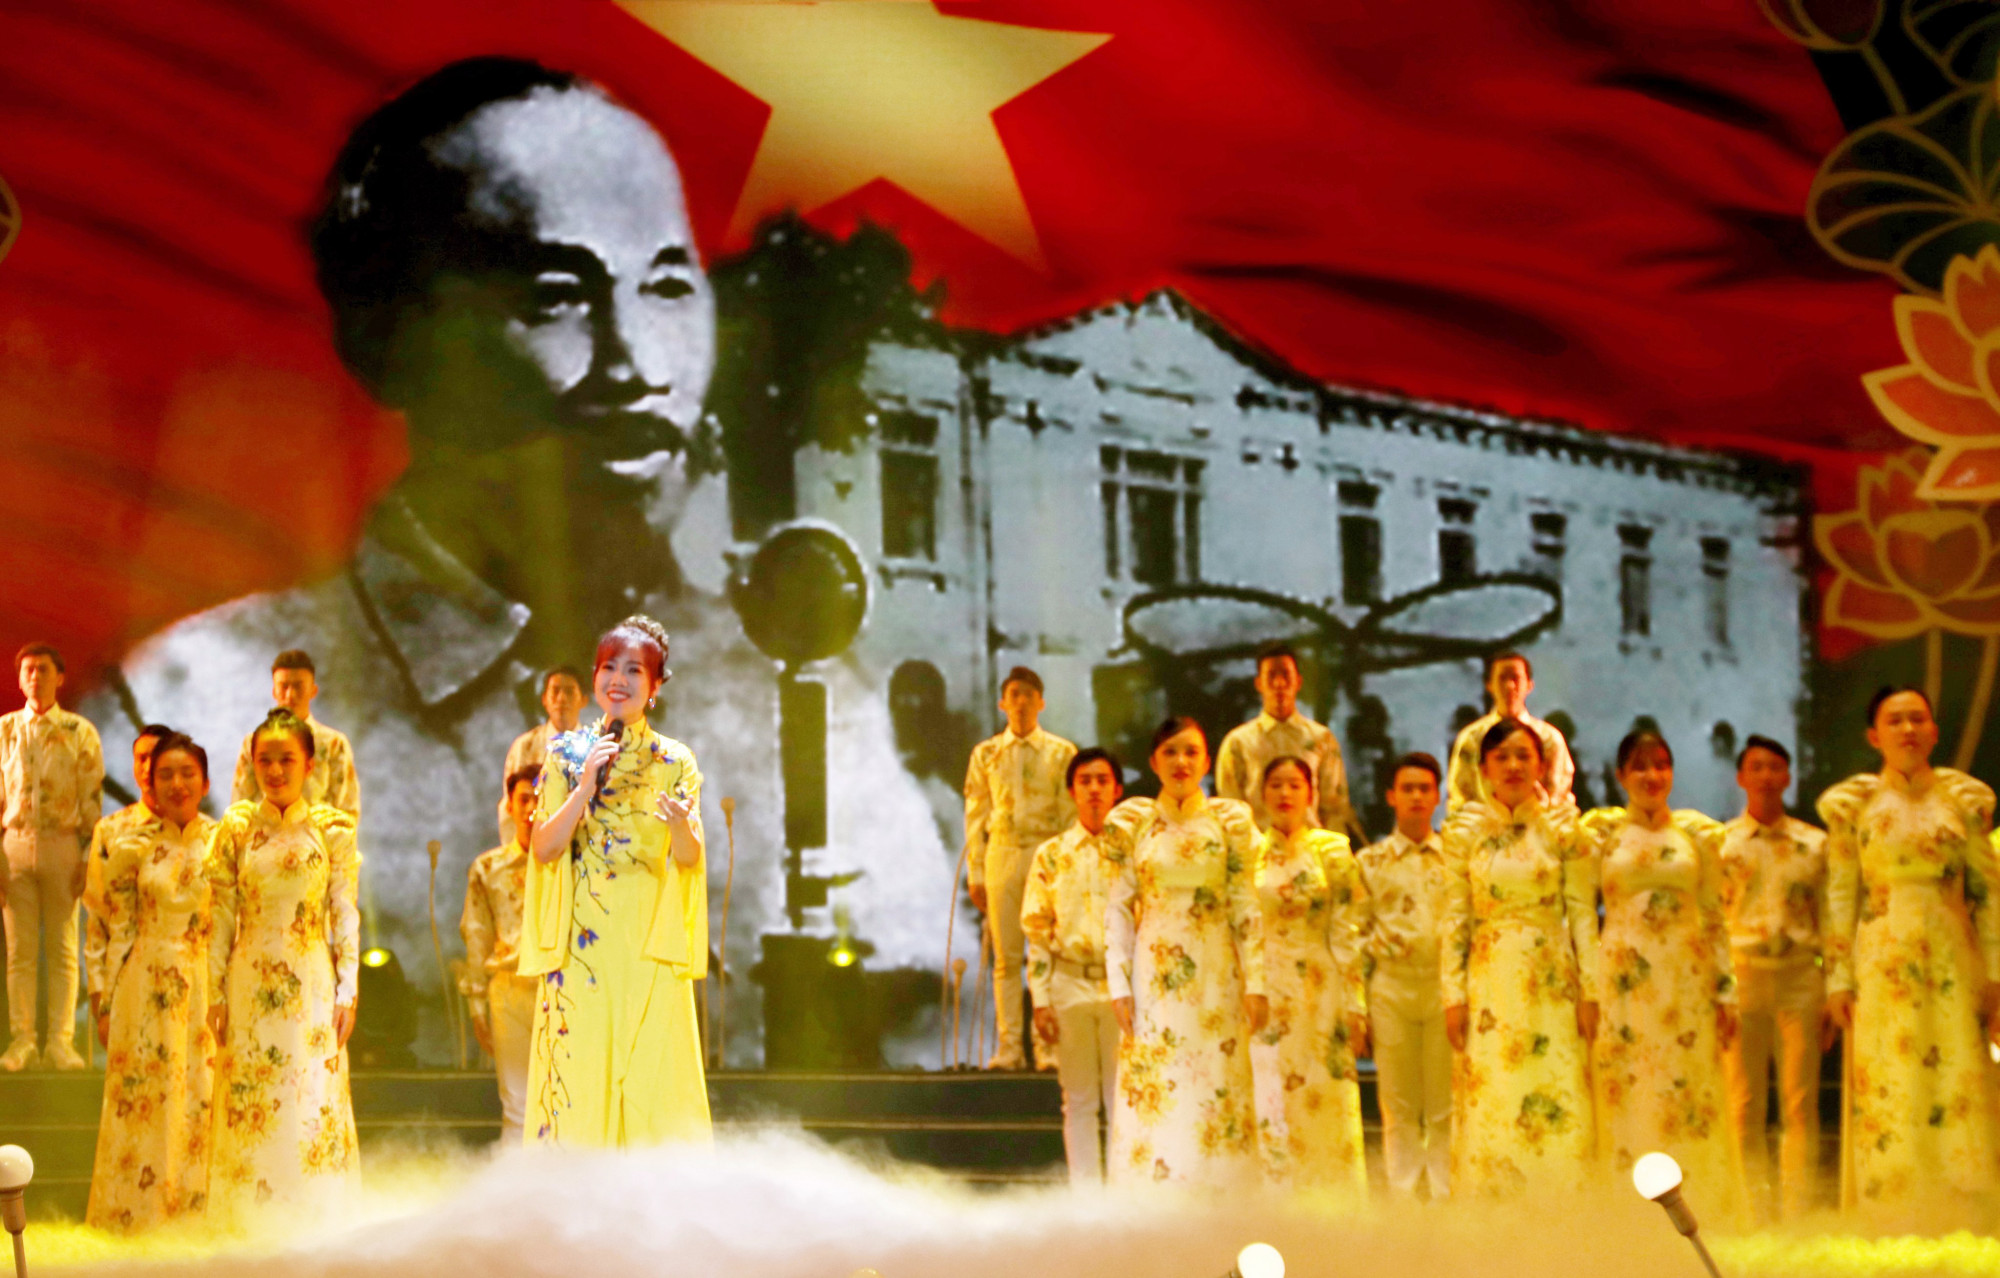 Tối 5/6, kỷ niệm 132 năm Ngày Sinh Chủ Tịch Hồ Chí Minh (19/5/1890 - 19/5/2022) và kỷ niệm 111 năm Ngày Bác Hồ ra đi tìm đường cứu nước (5/6/1911 - 5/6/2022). 